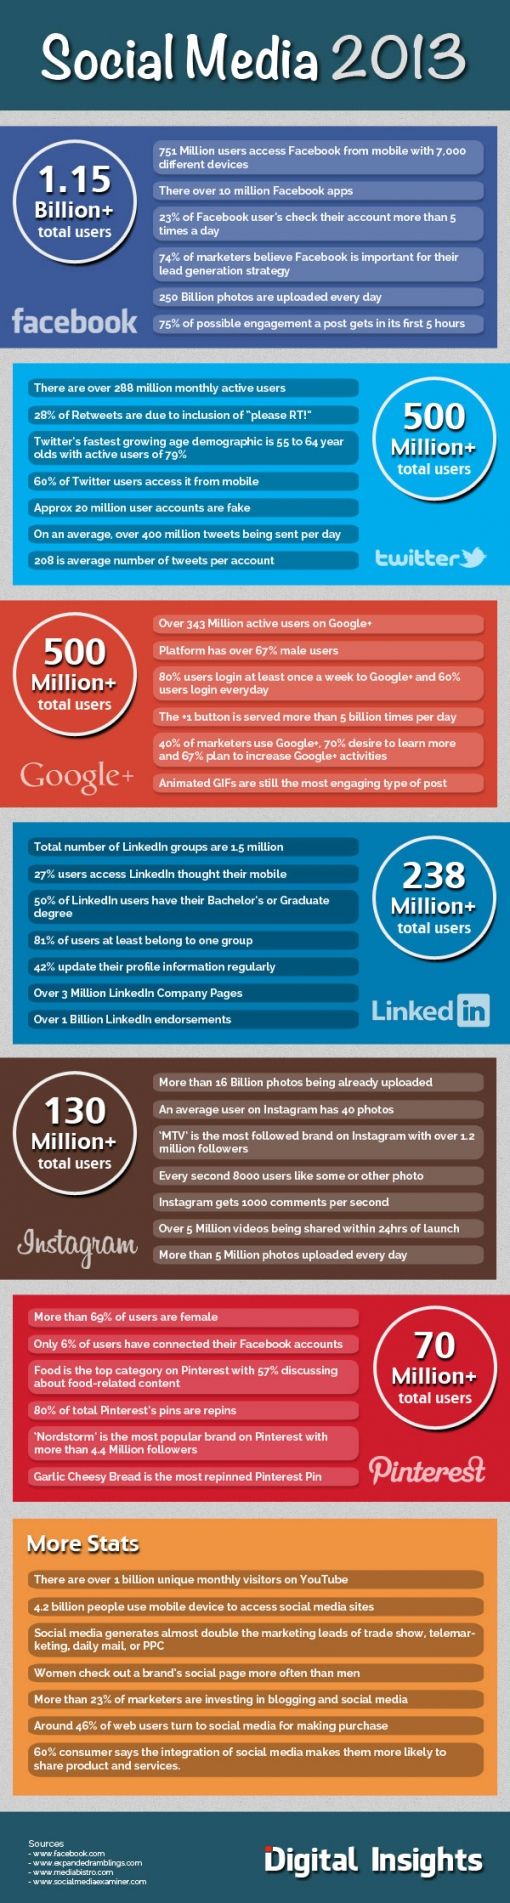 social-media-2013-infographic.jpg